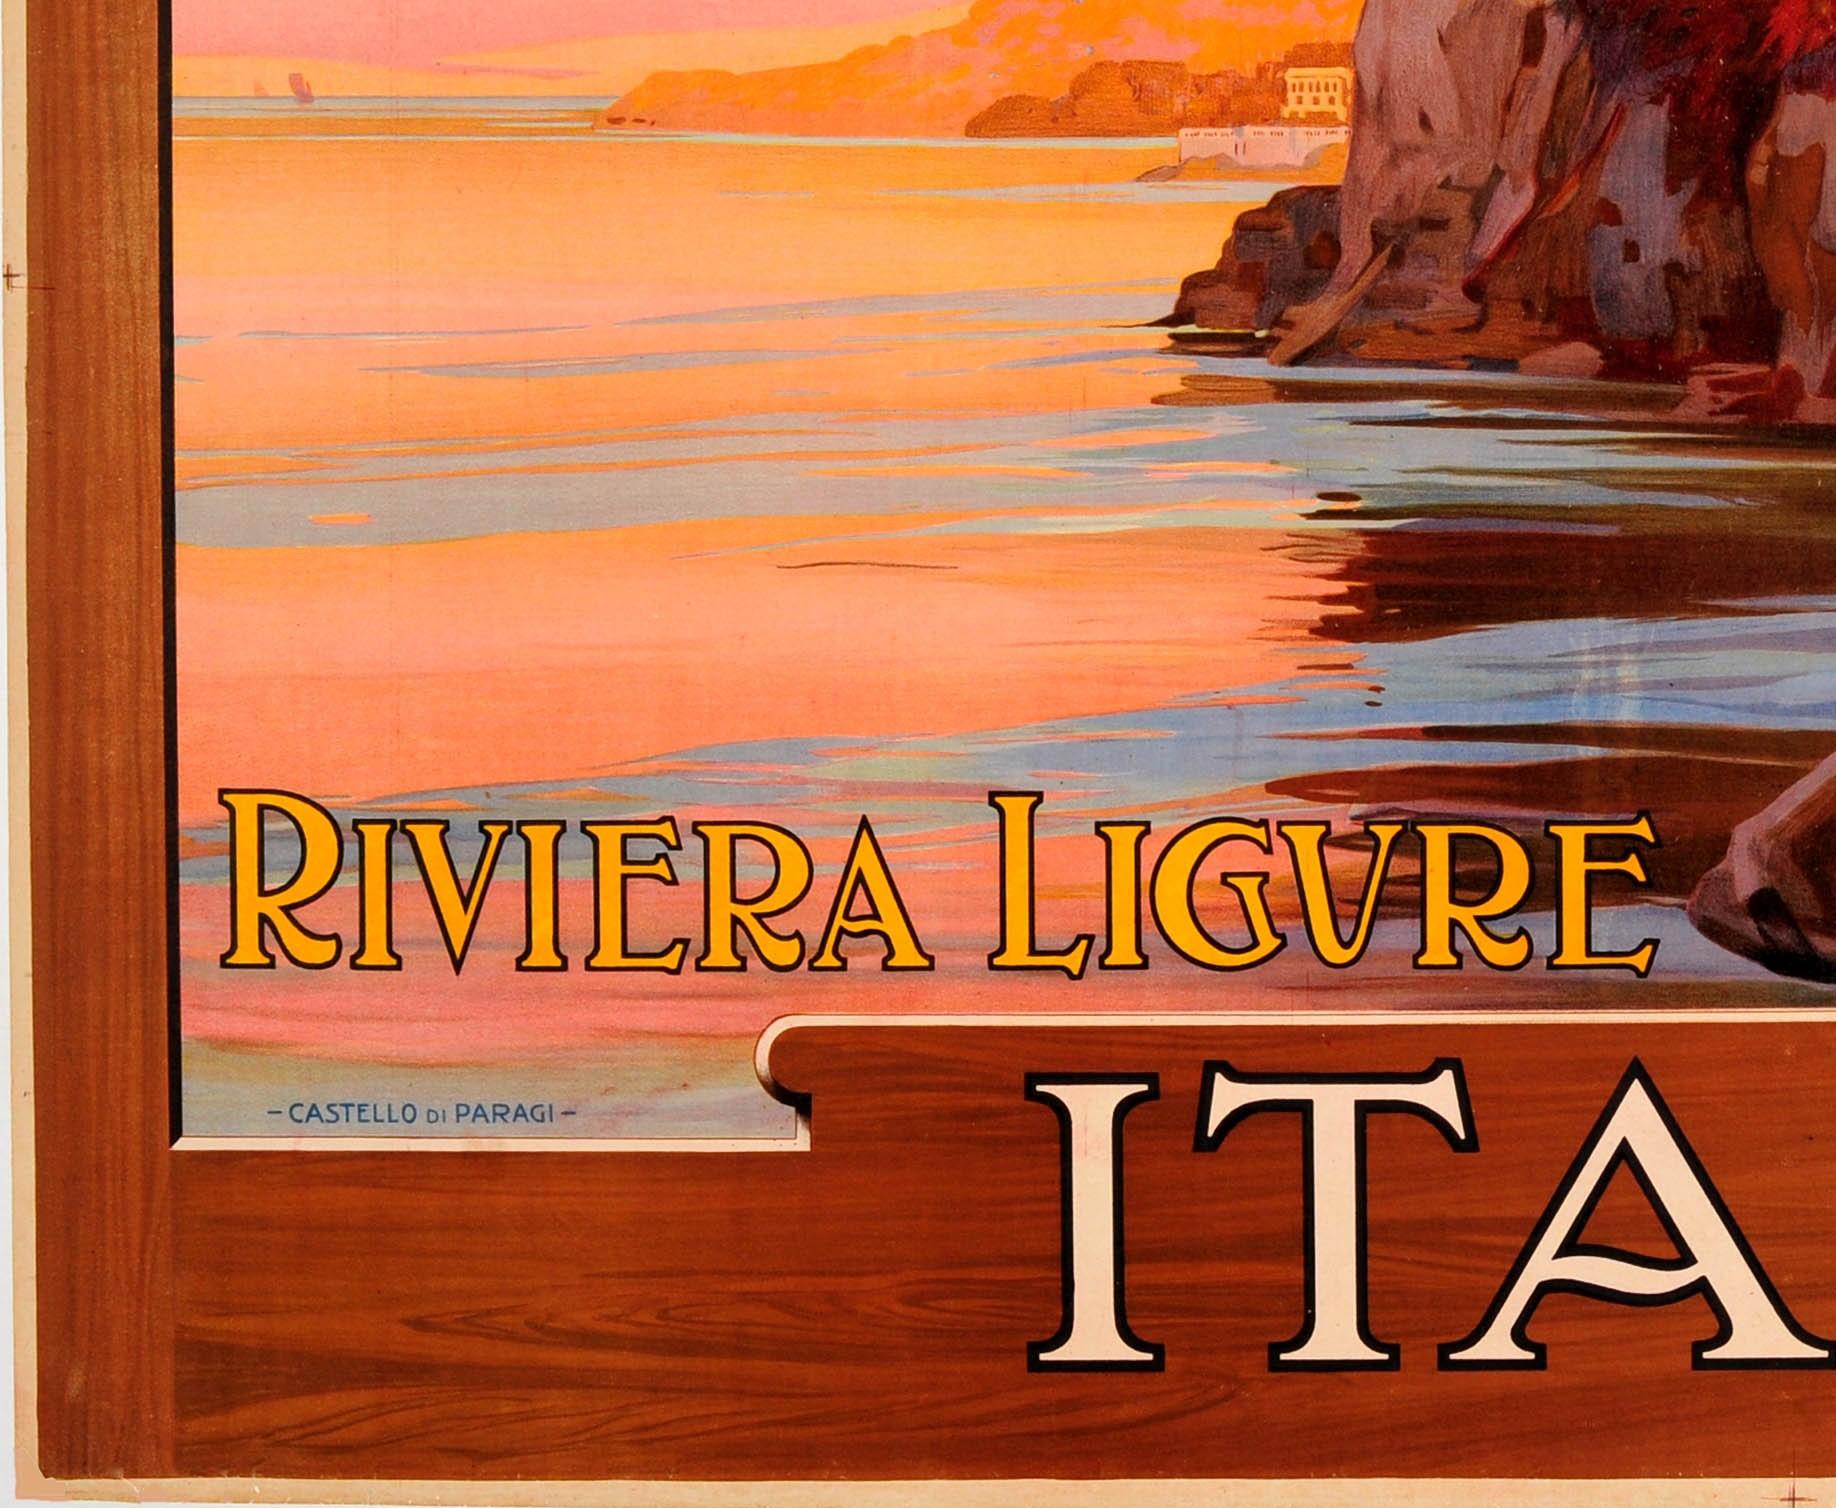 Early 20th Century Original Antique 1913 Railway Poster Castello Di Paraggi Italian Riviera Ligure For Sale